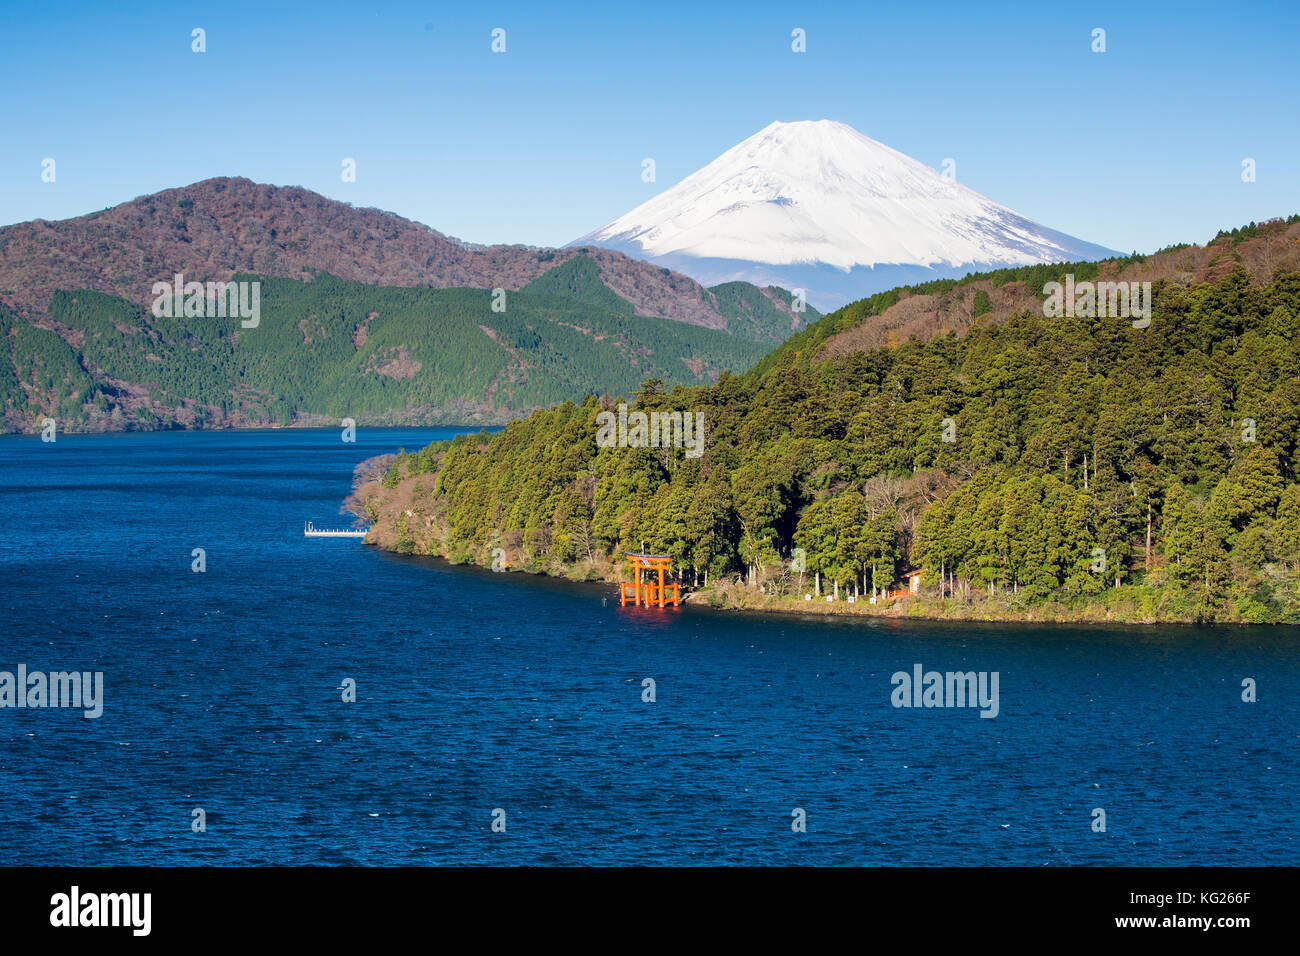 Lago Ashinoko con il Monte Fuji dietro, fuji-Hakone-izu national park, hakone, shizuoka, Honshu, Giappone, Asia Foto Stock